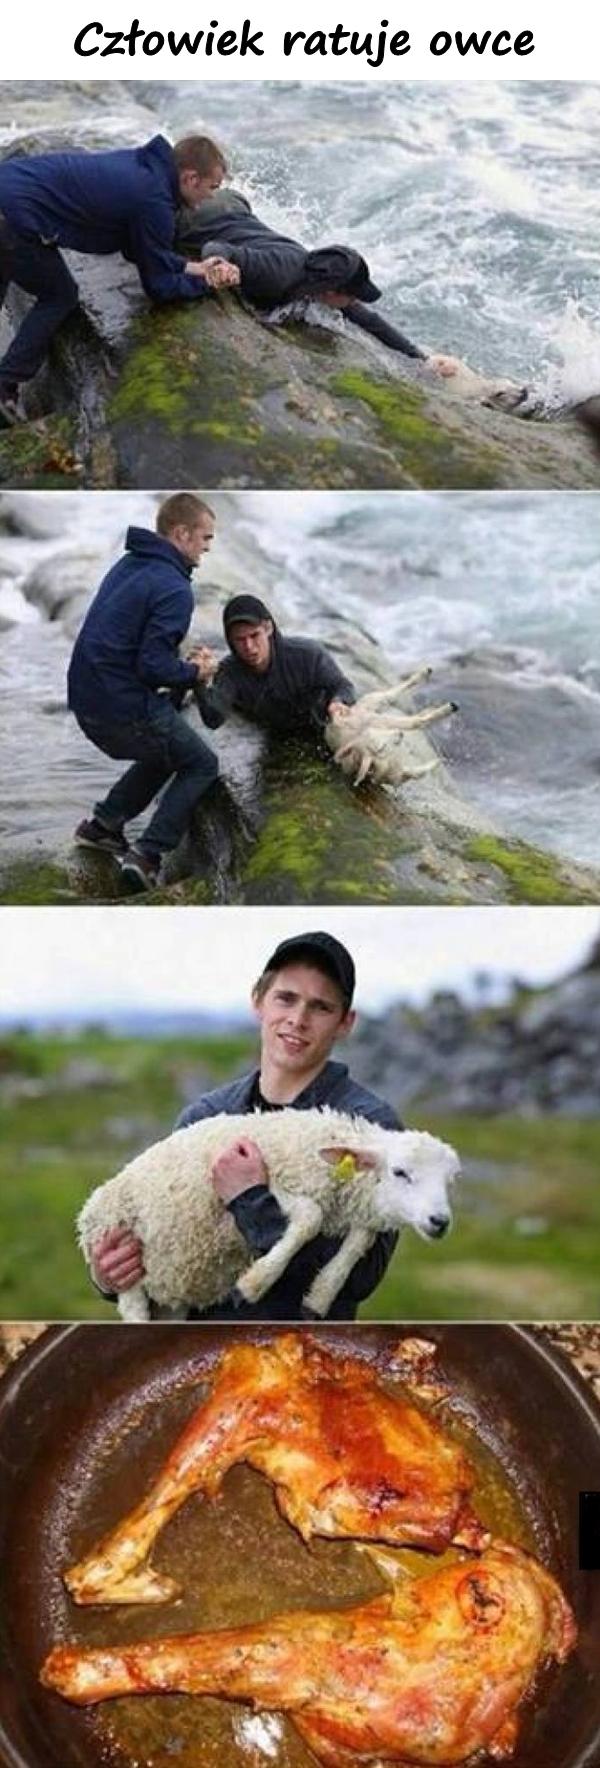 Człowiek ratuje owce